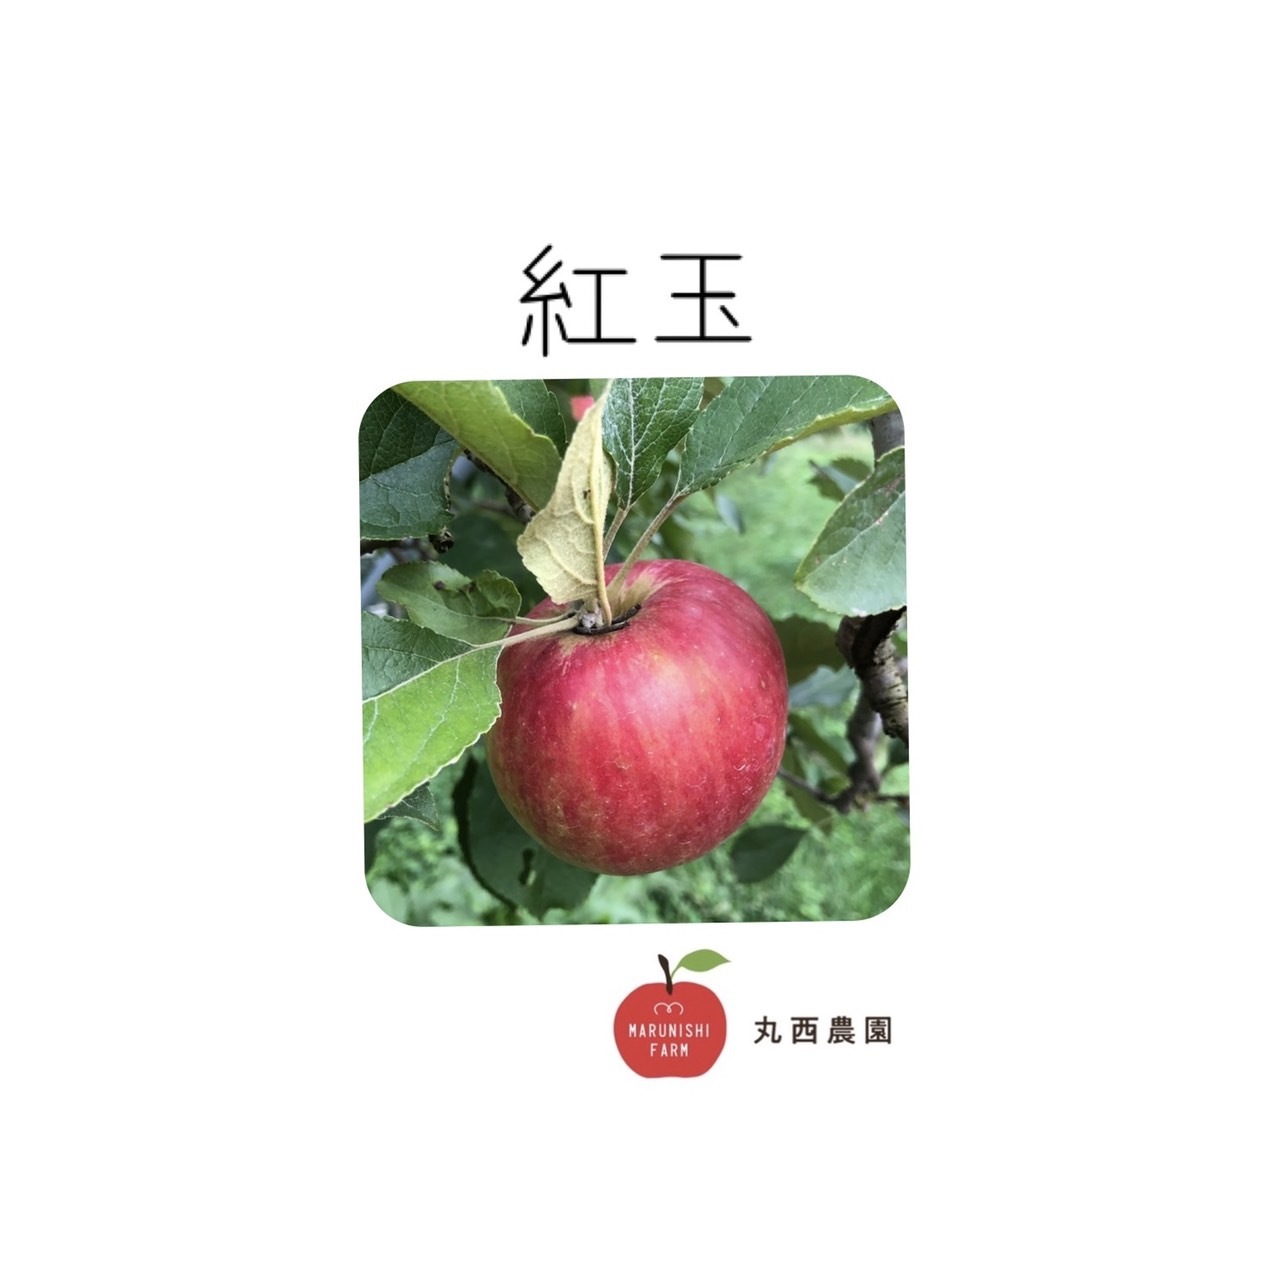 ☆期間限定☆青森県産 メルシー 希少 りんご 6~8玉 ⑪